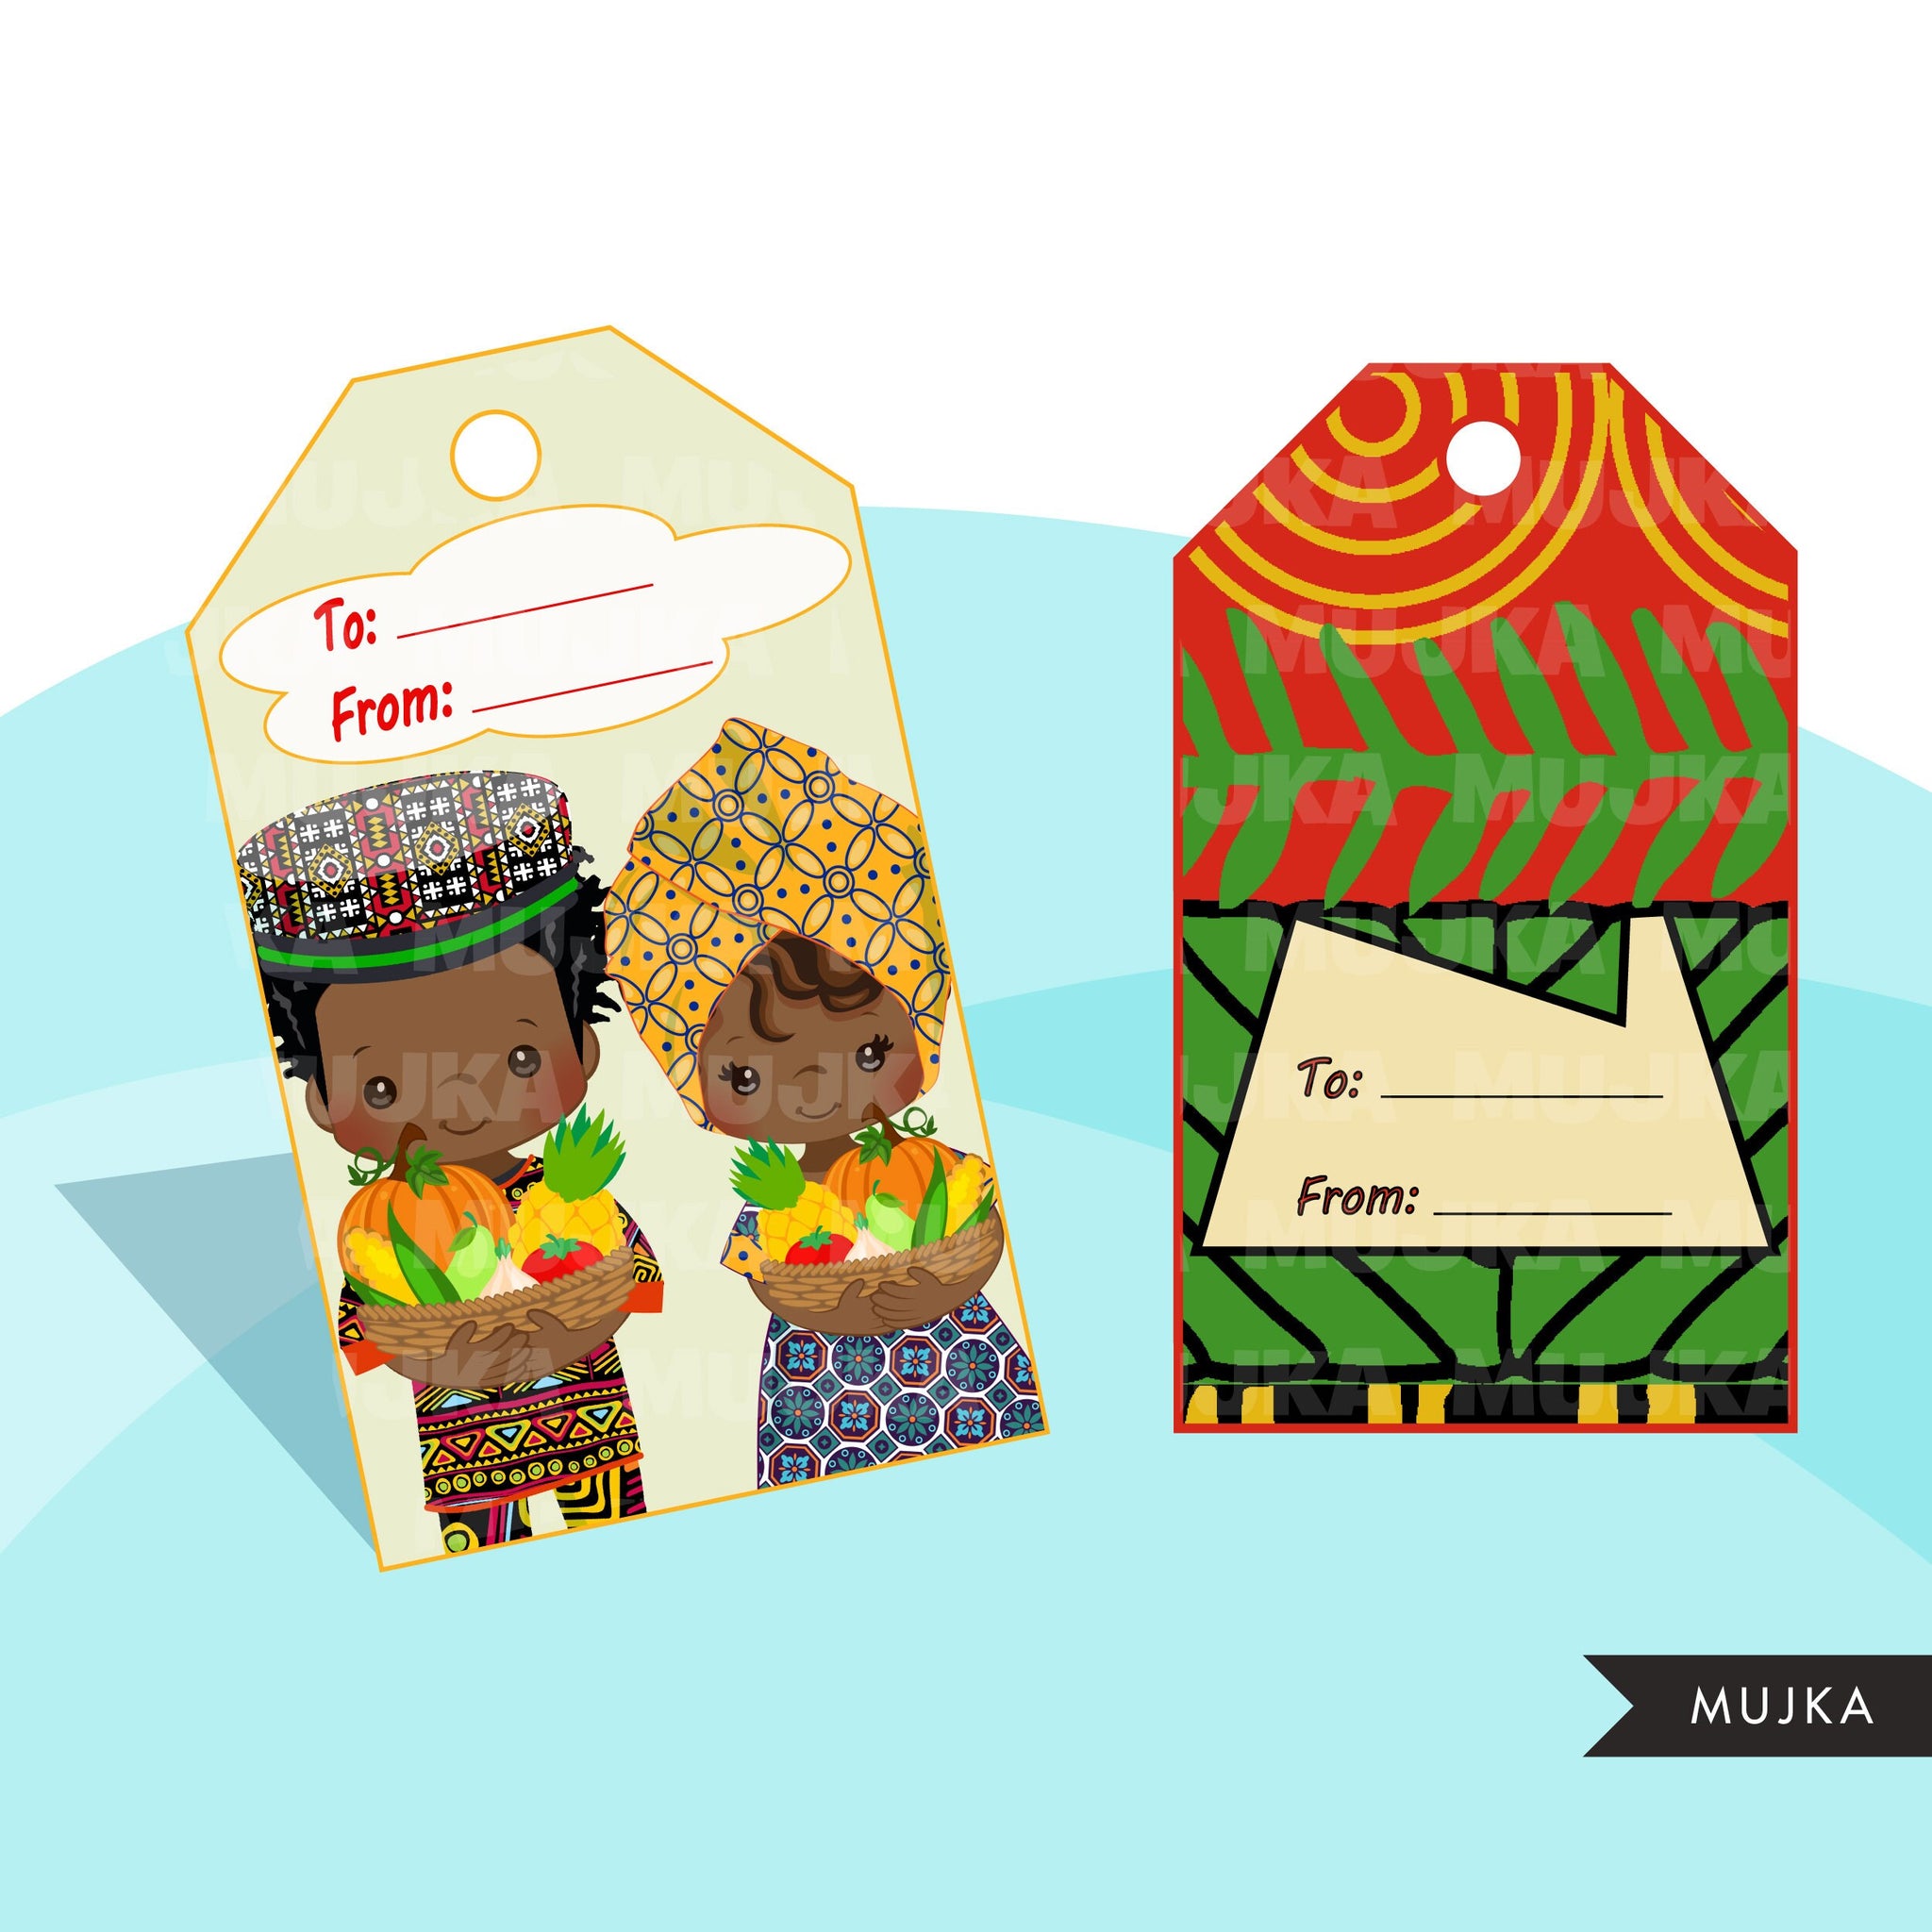 Etiquetas Kwanzaa, etiquetas navideñas Kwanzaa imprimibles, etiquetas de regalo PNG digitales, pegatinas digitales Kwanzaa, lindas etiquetas de regalo afroamericanas, negro rojo